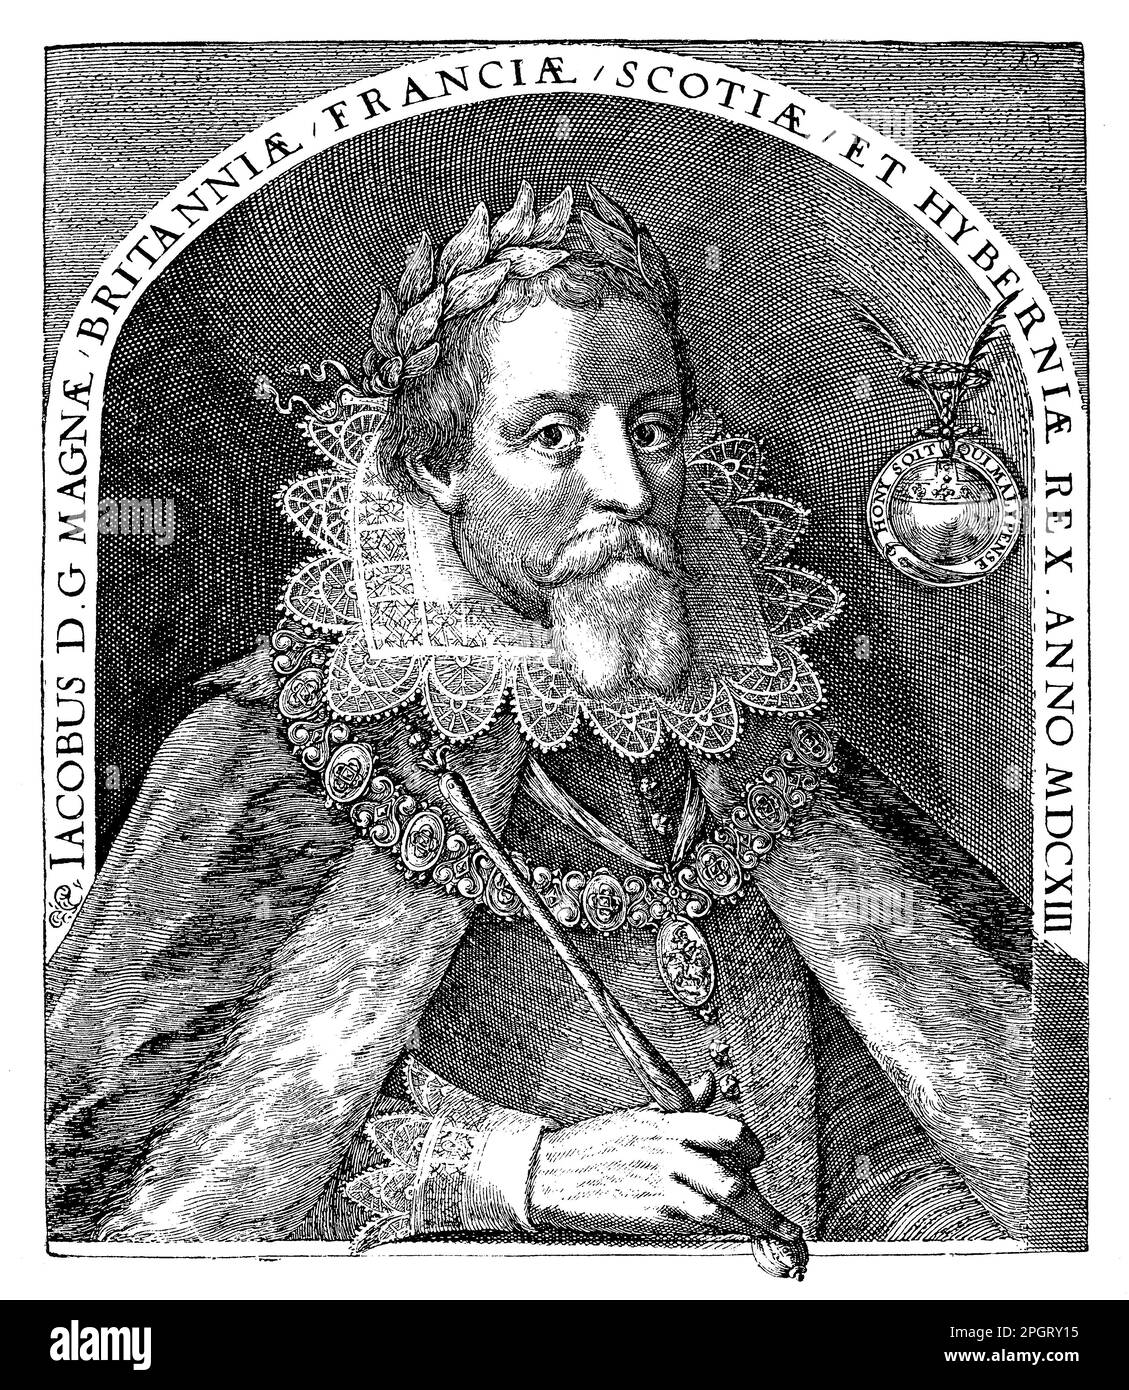 James VI d'Écosse, également connu sous le nom de James I d'Angleterre, était un roi écossais qui a vécu de 1566 à 1625. Il succéda à sa mère, Mary, reine d'Écosse, comme roi d'Écosse à l'âge de 13 ans et hérita plus tard du trône anglais à la mort de la reine Elizabeth I. James était connu pour son amour de l'apprentissage et du patronage des arts, ainsi que pour ses efforts pour promouvoir l'unité religieuse dans ses royaumes. Il a autorisé la création de la Bible du Roi James, qui est devenue un point de repère de la littérature anglaise et une œuvre déterminante de la réforme protestante. James a également dû faire face à des défis politiques pendant son règne Banque D'Images